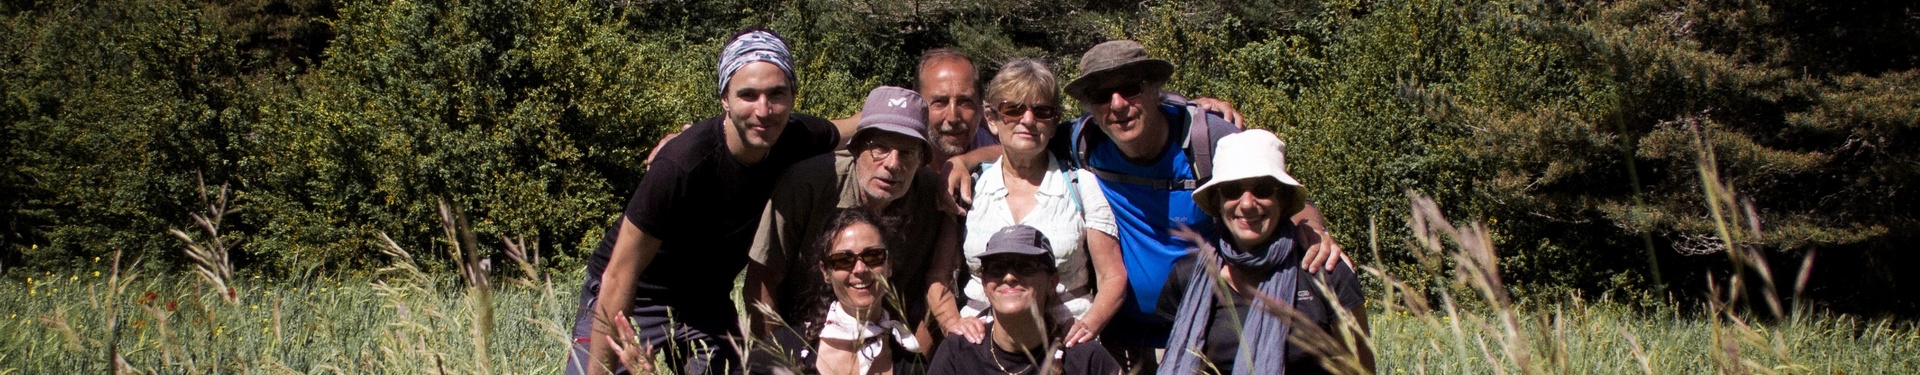 Rejoindre l'équipe de Nature Occitane - organisateur de séjours